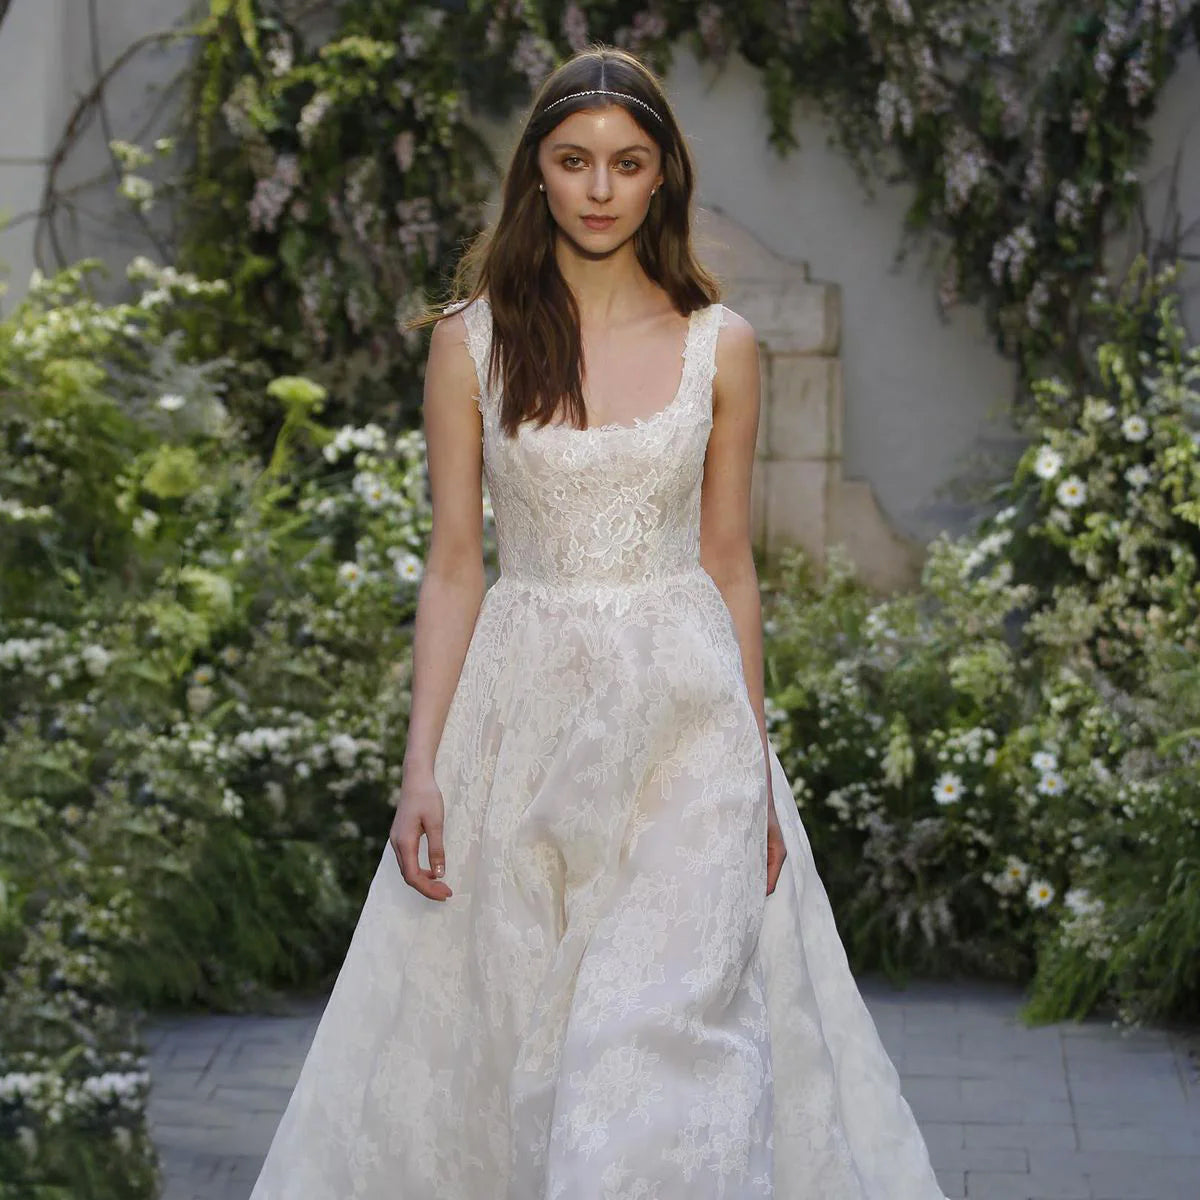 Champagne Lace - Modern Wedding Dress - Bridal Fabrics